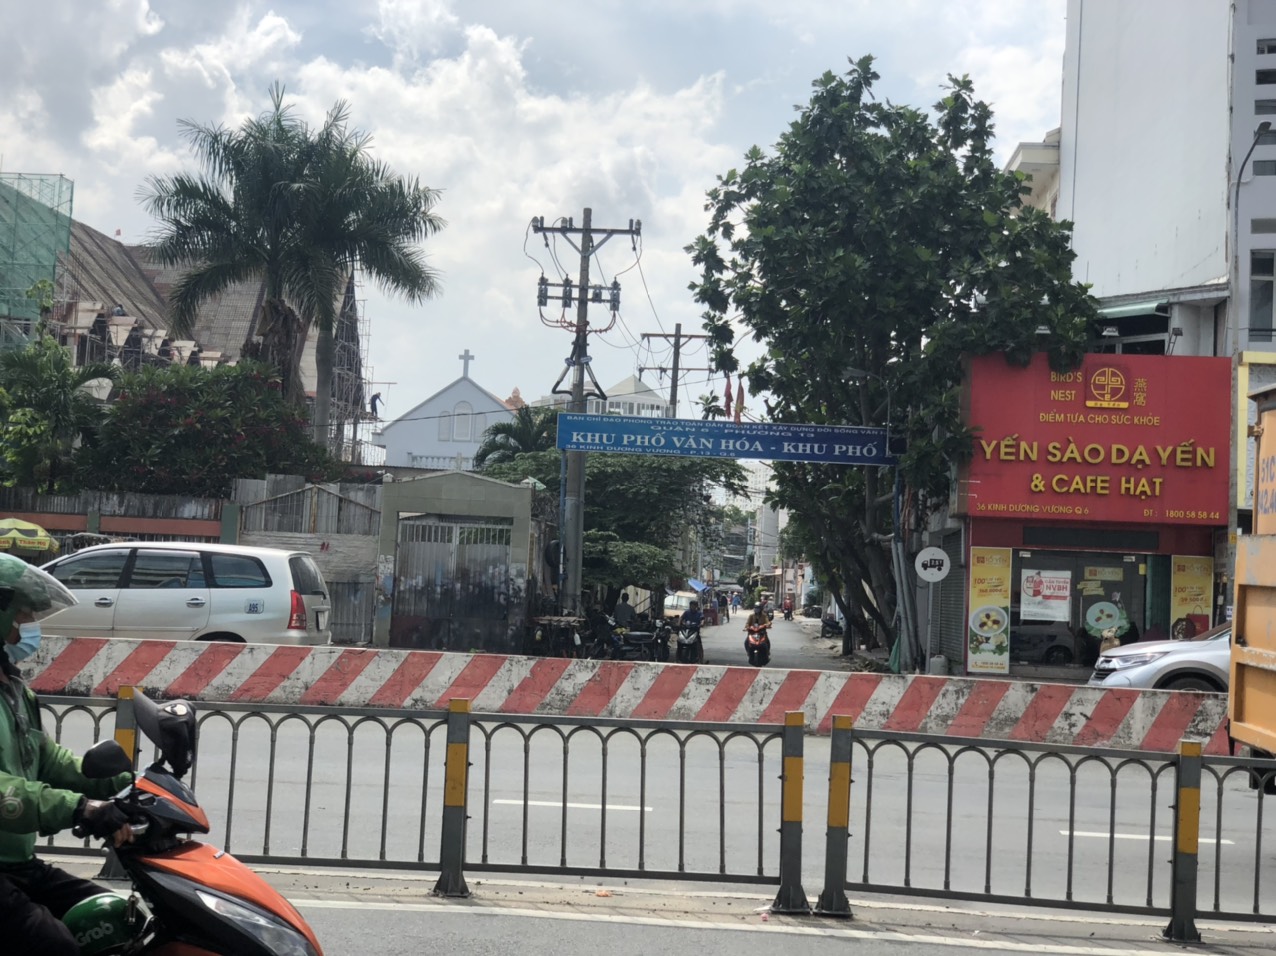 Bán nhà đường xe hơi hẻm số 36 Kinh Dương Vương - 4m x 18.5m - 3 lầu F13 Q6- gần coop